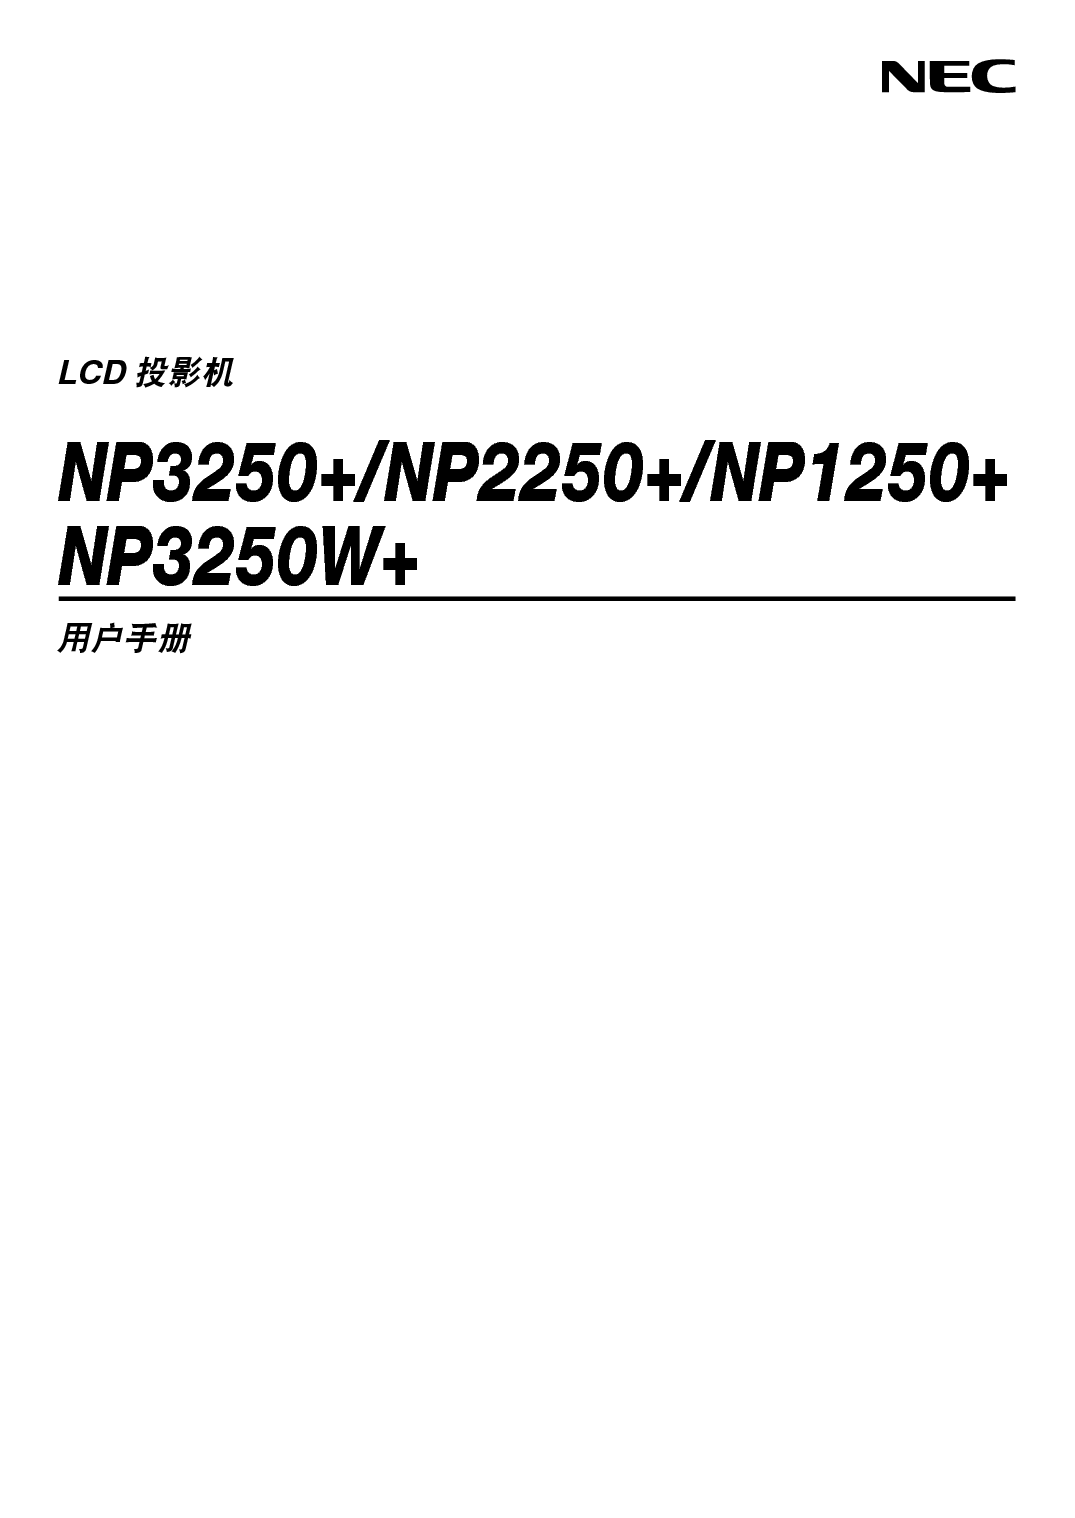 NEC NP1250+ 用户手册 封面